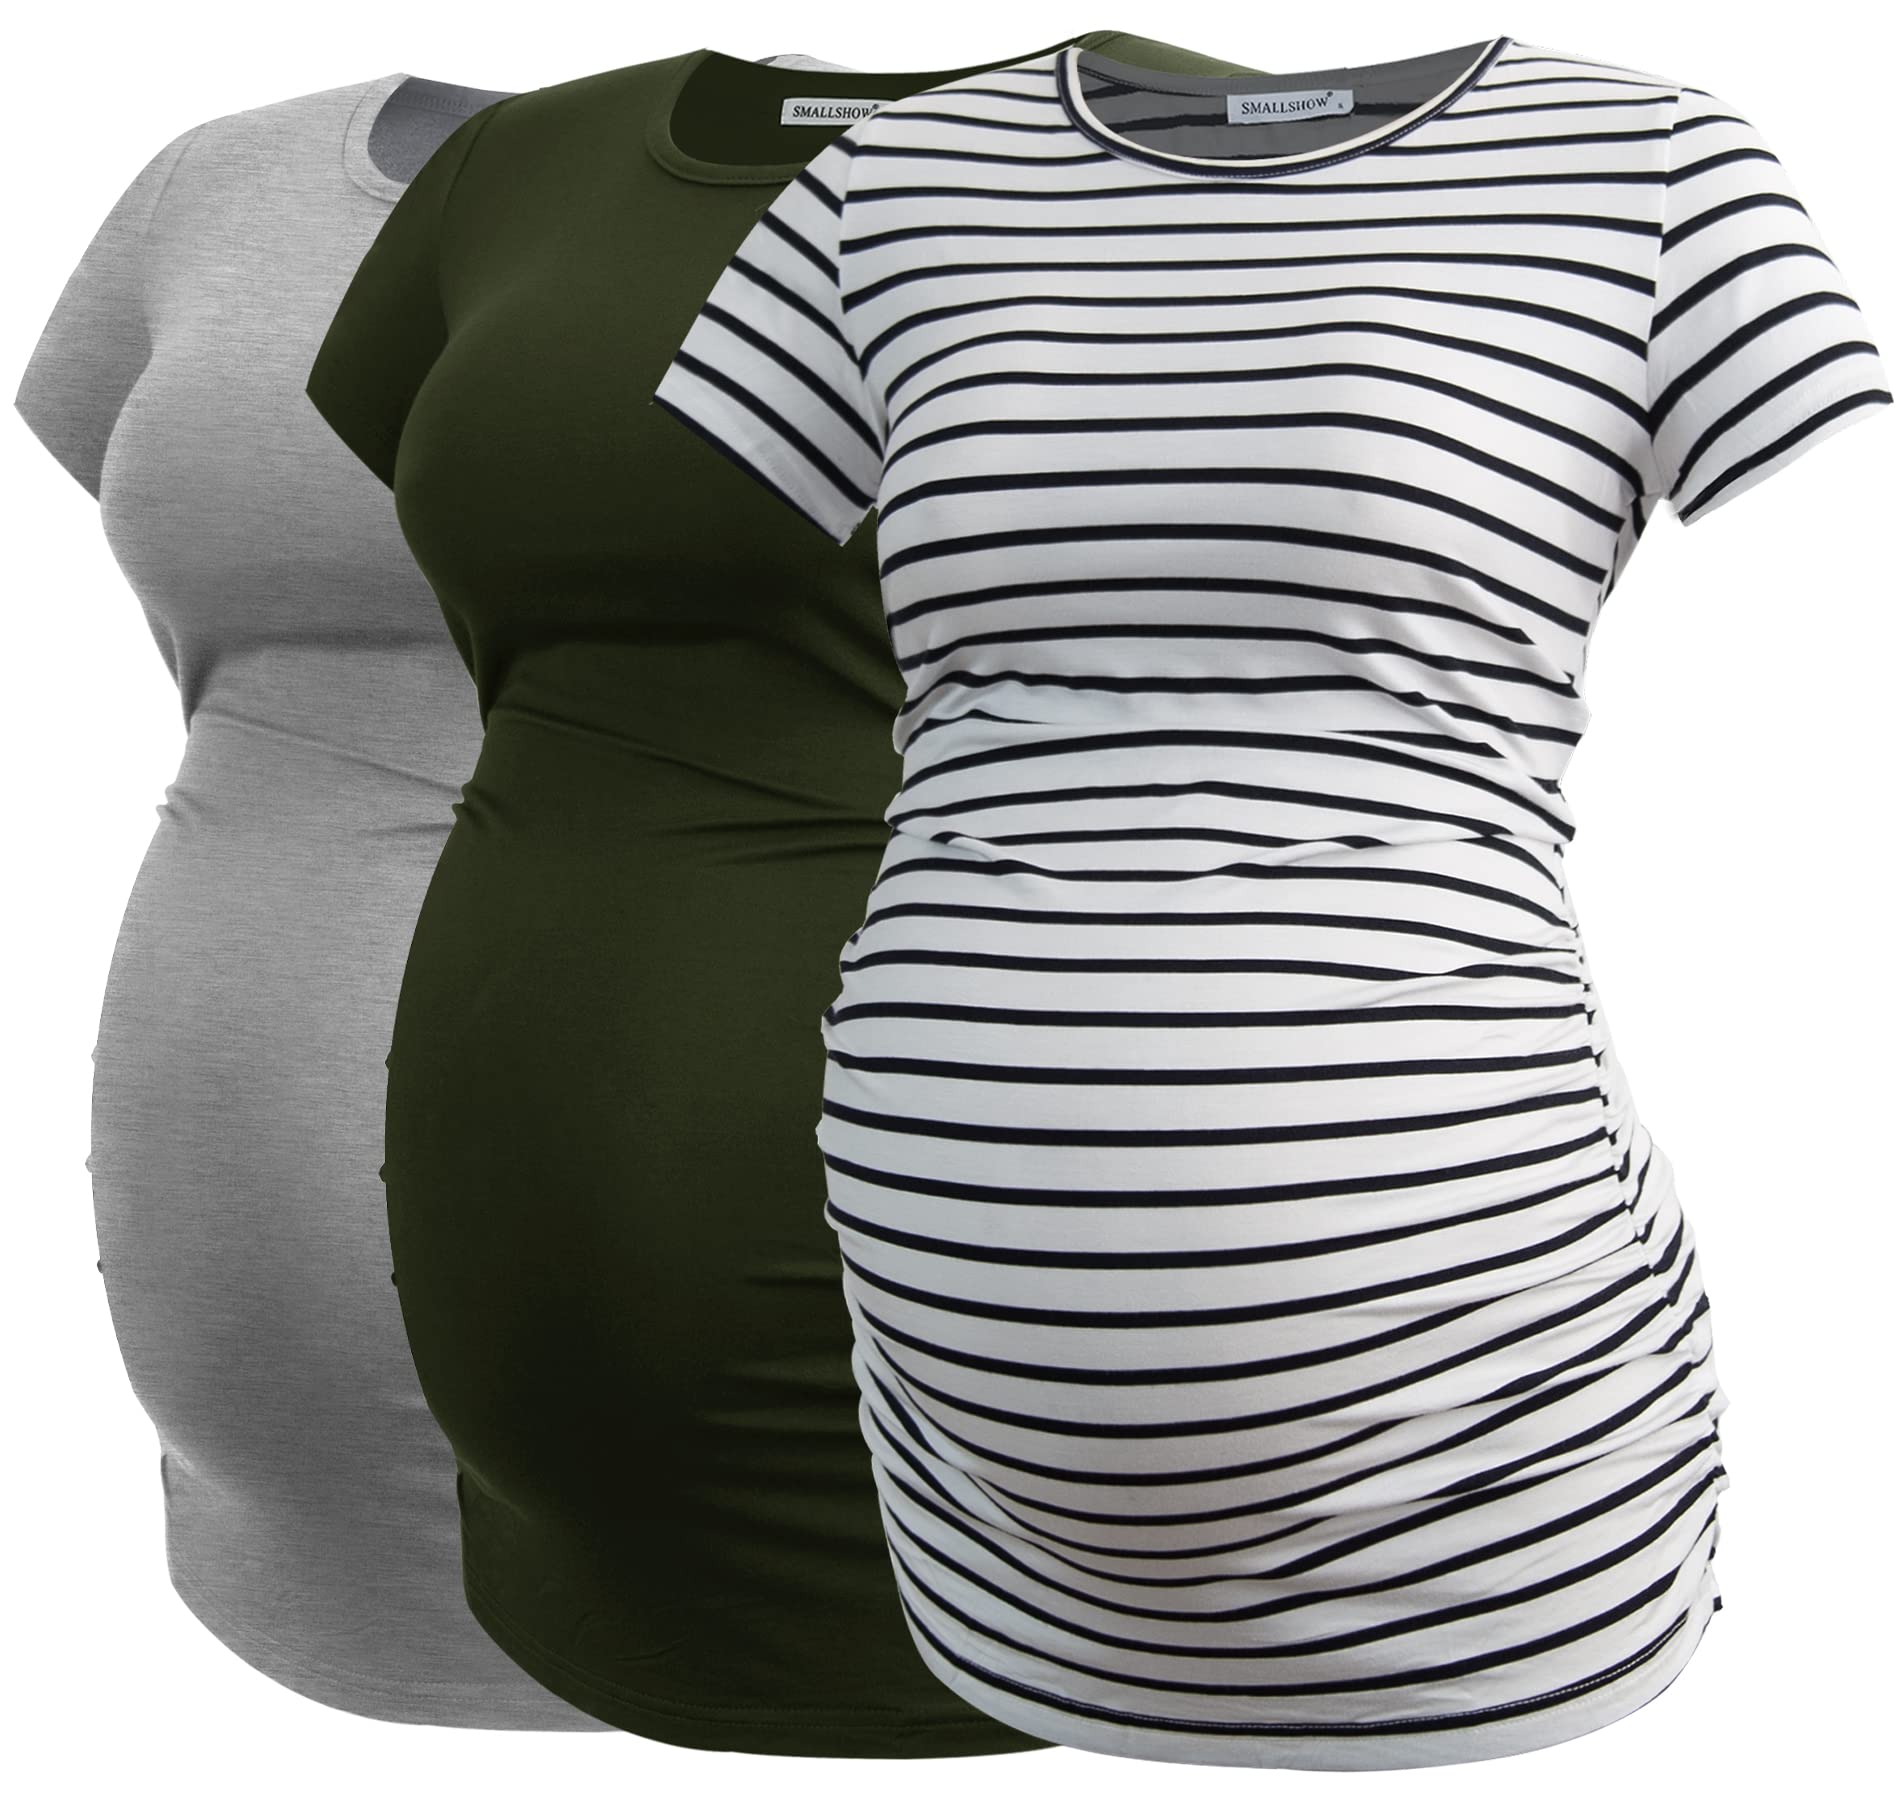 Smallshow Damen Umstandsmode Tops Seitlich Geraffte Schwangerschafts Umstandstop 3er Pack Army Green-Light Grey-White Stripe Small